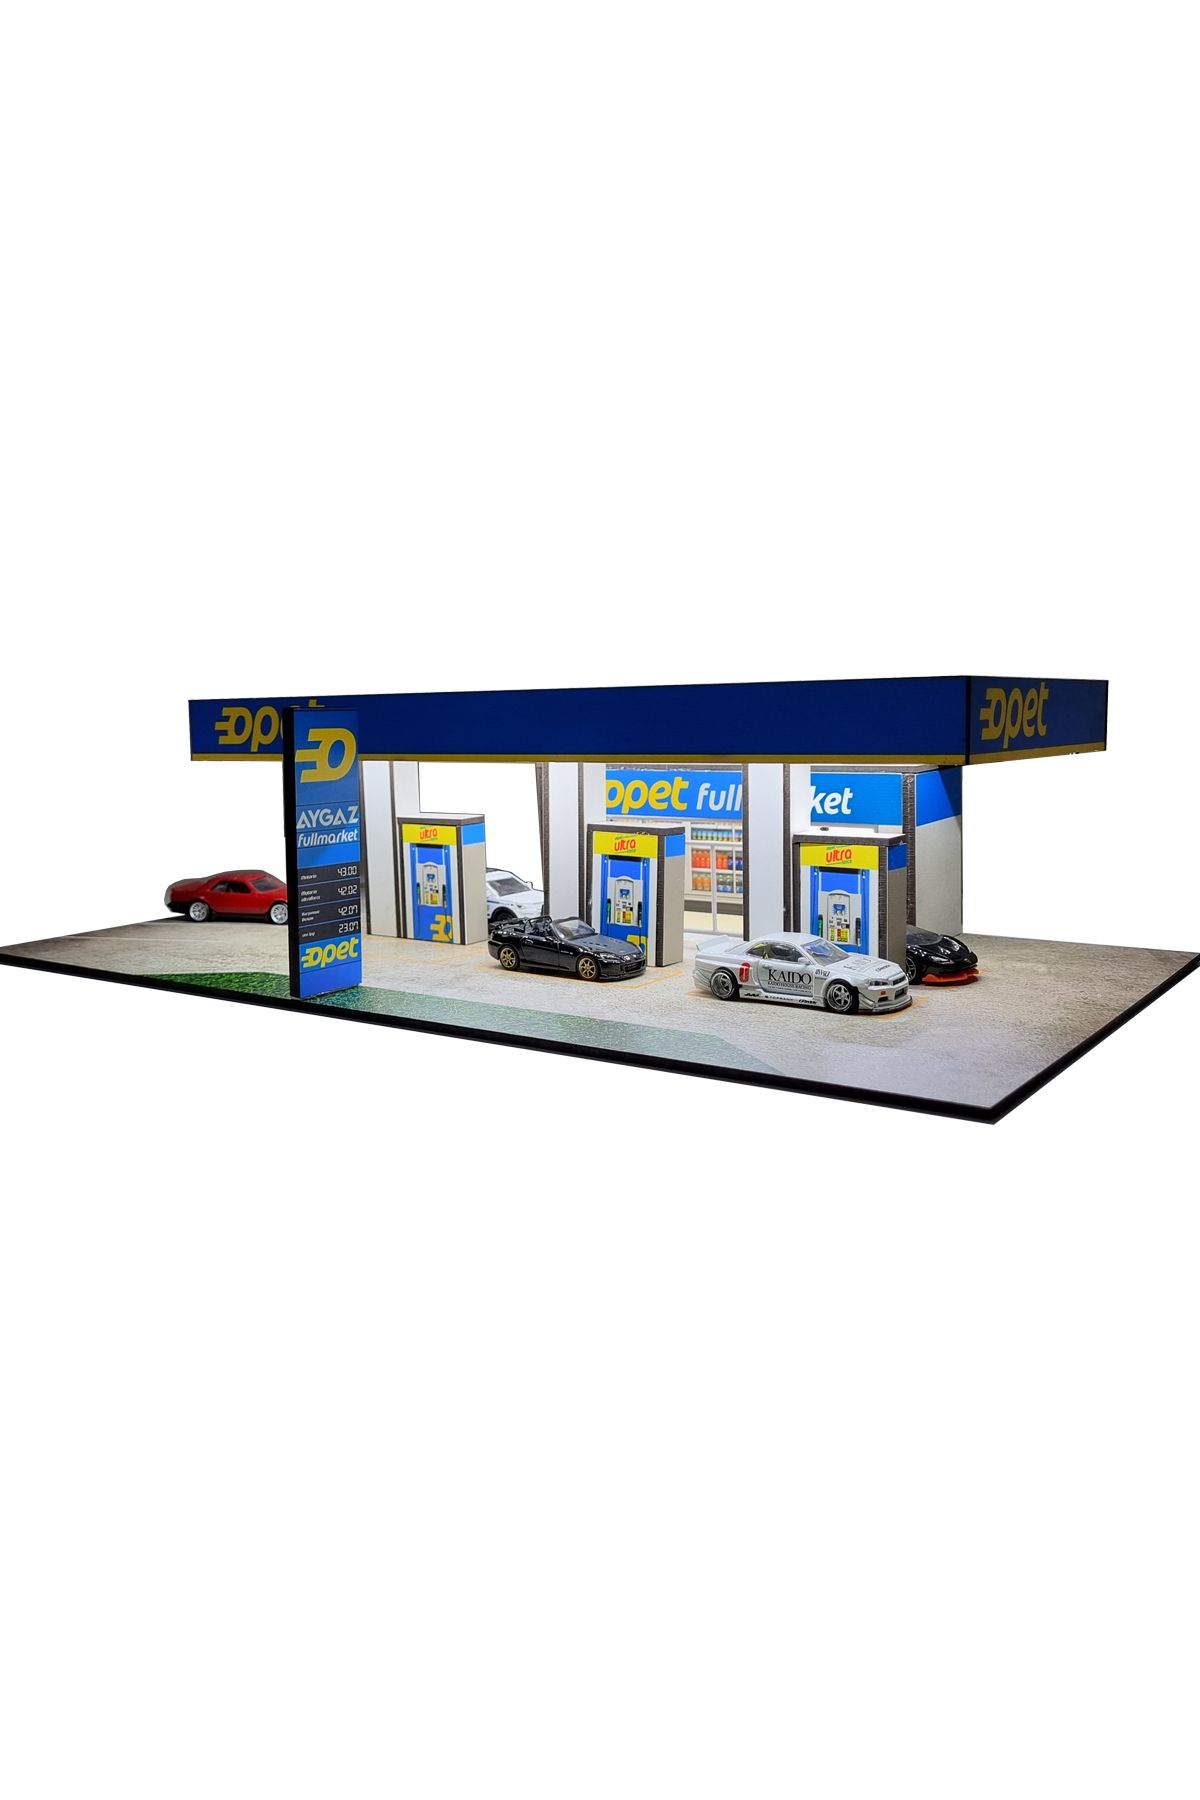 HOT WHEELS Opet Benzinlik Diorama Led Aydınlatmalı 1/64 Ölçek Uyumlu